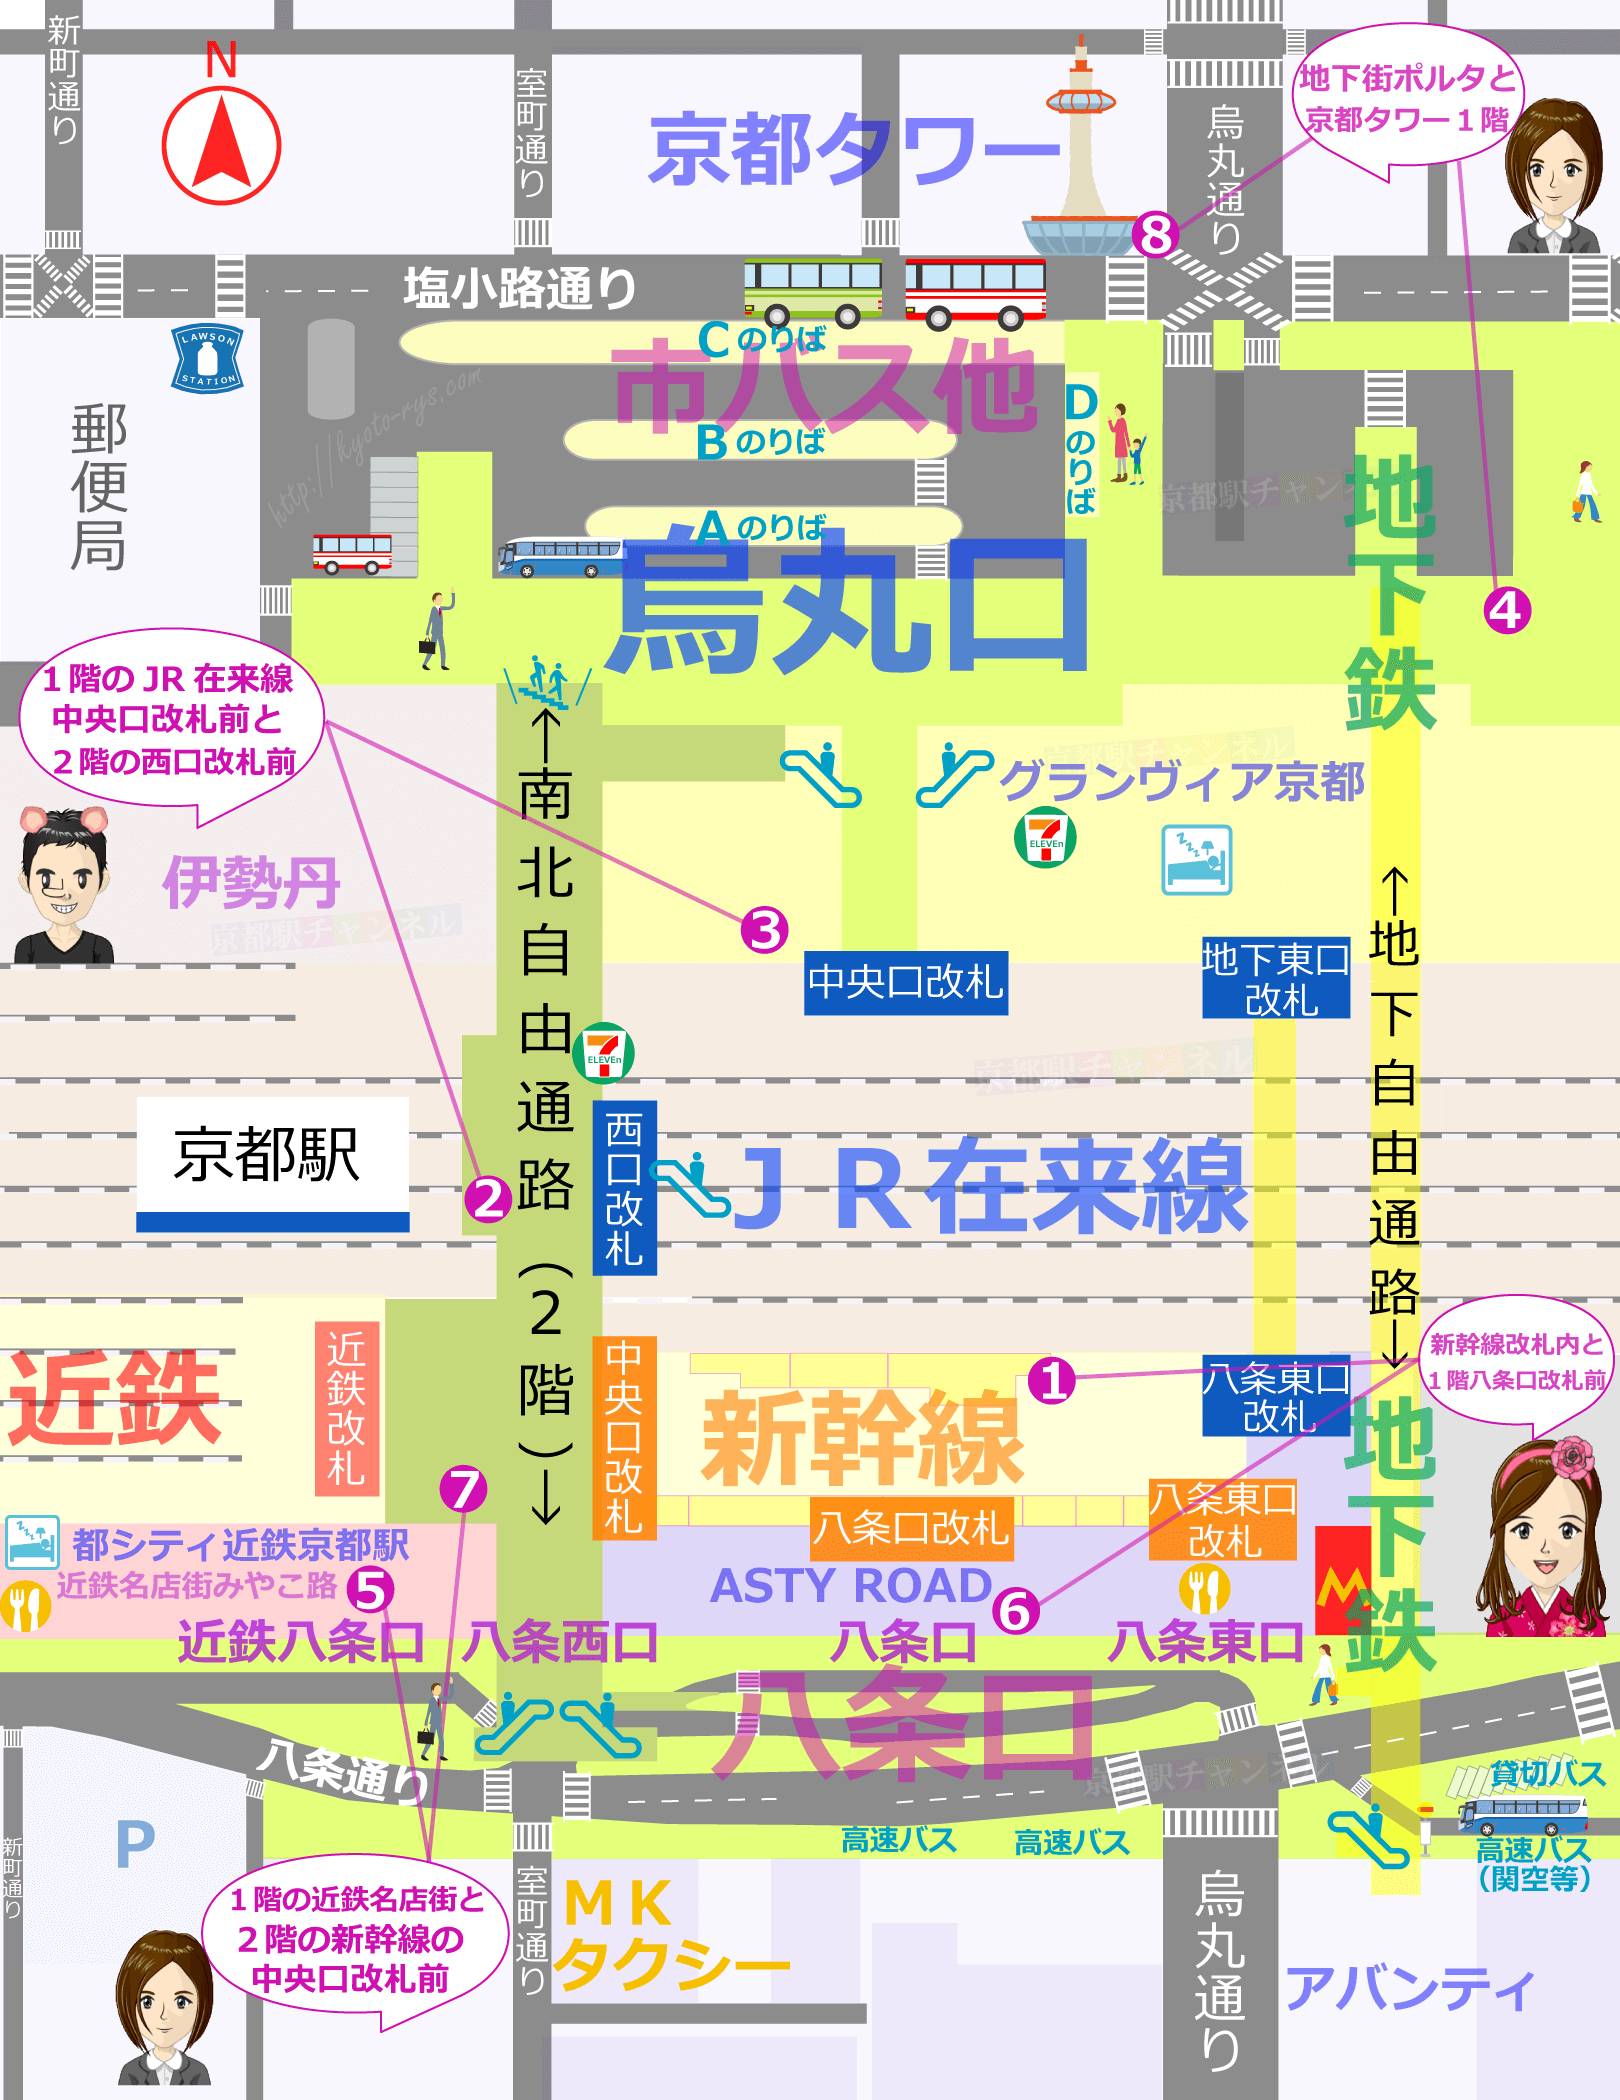 京都駅の全体図とお土産売り場マップ